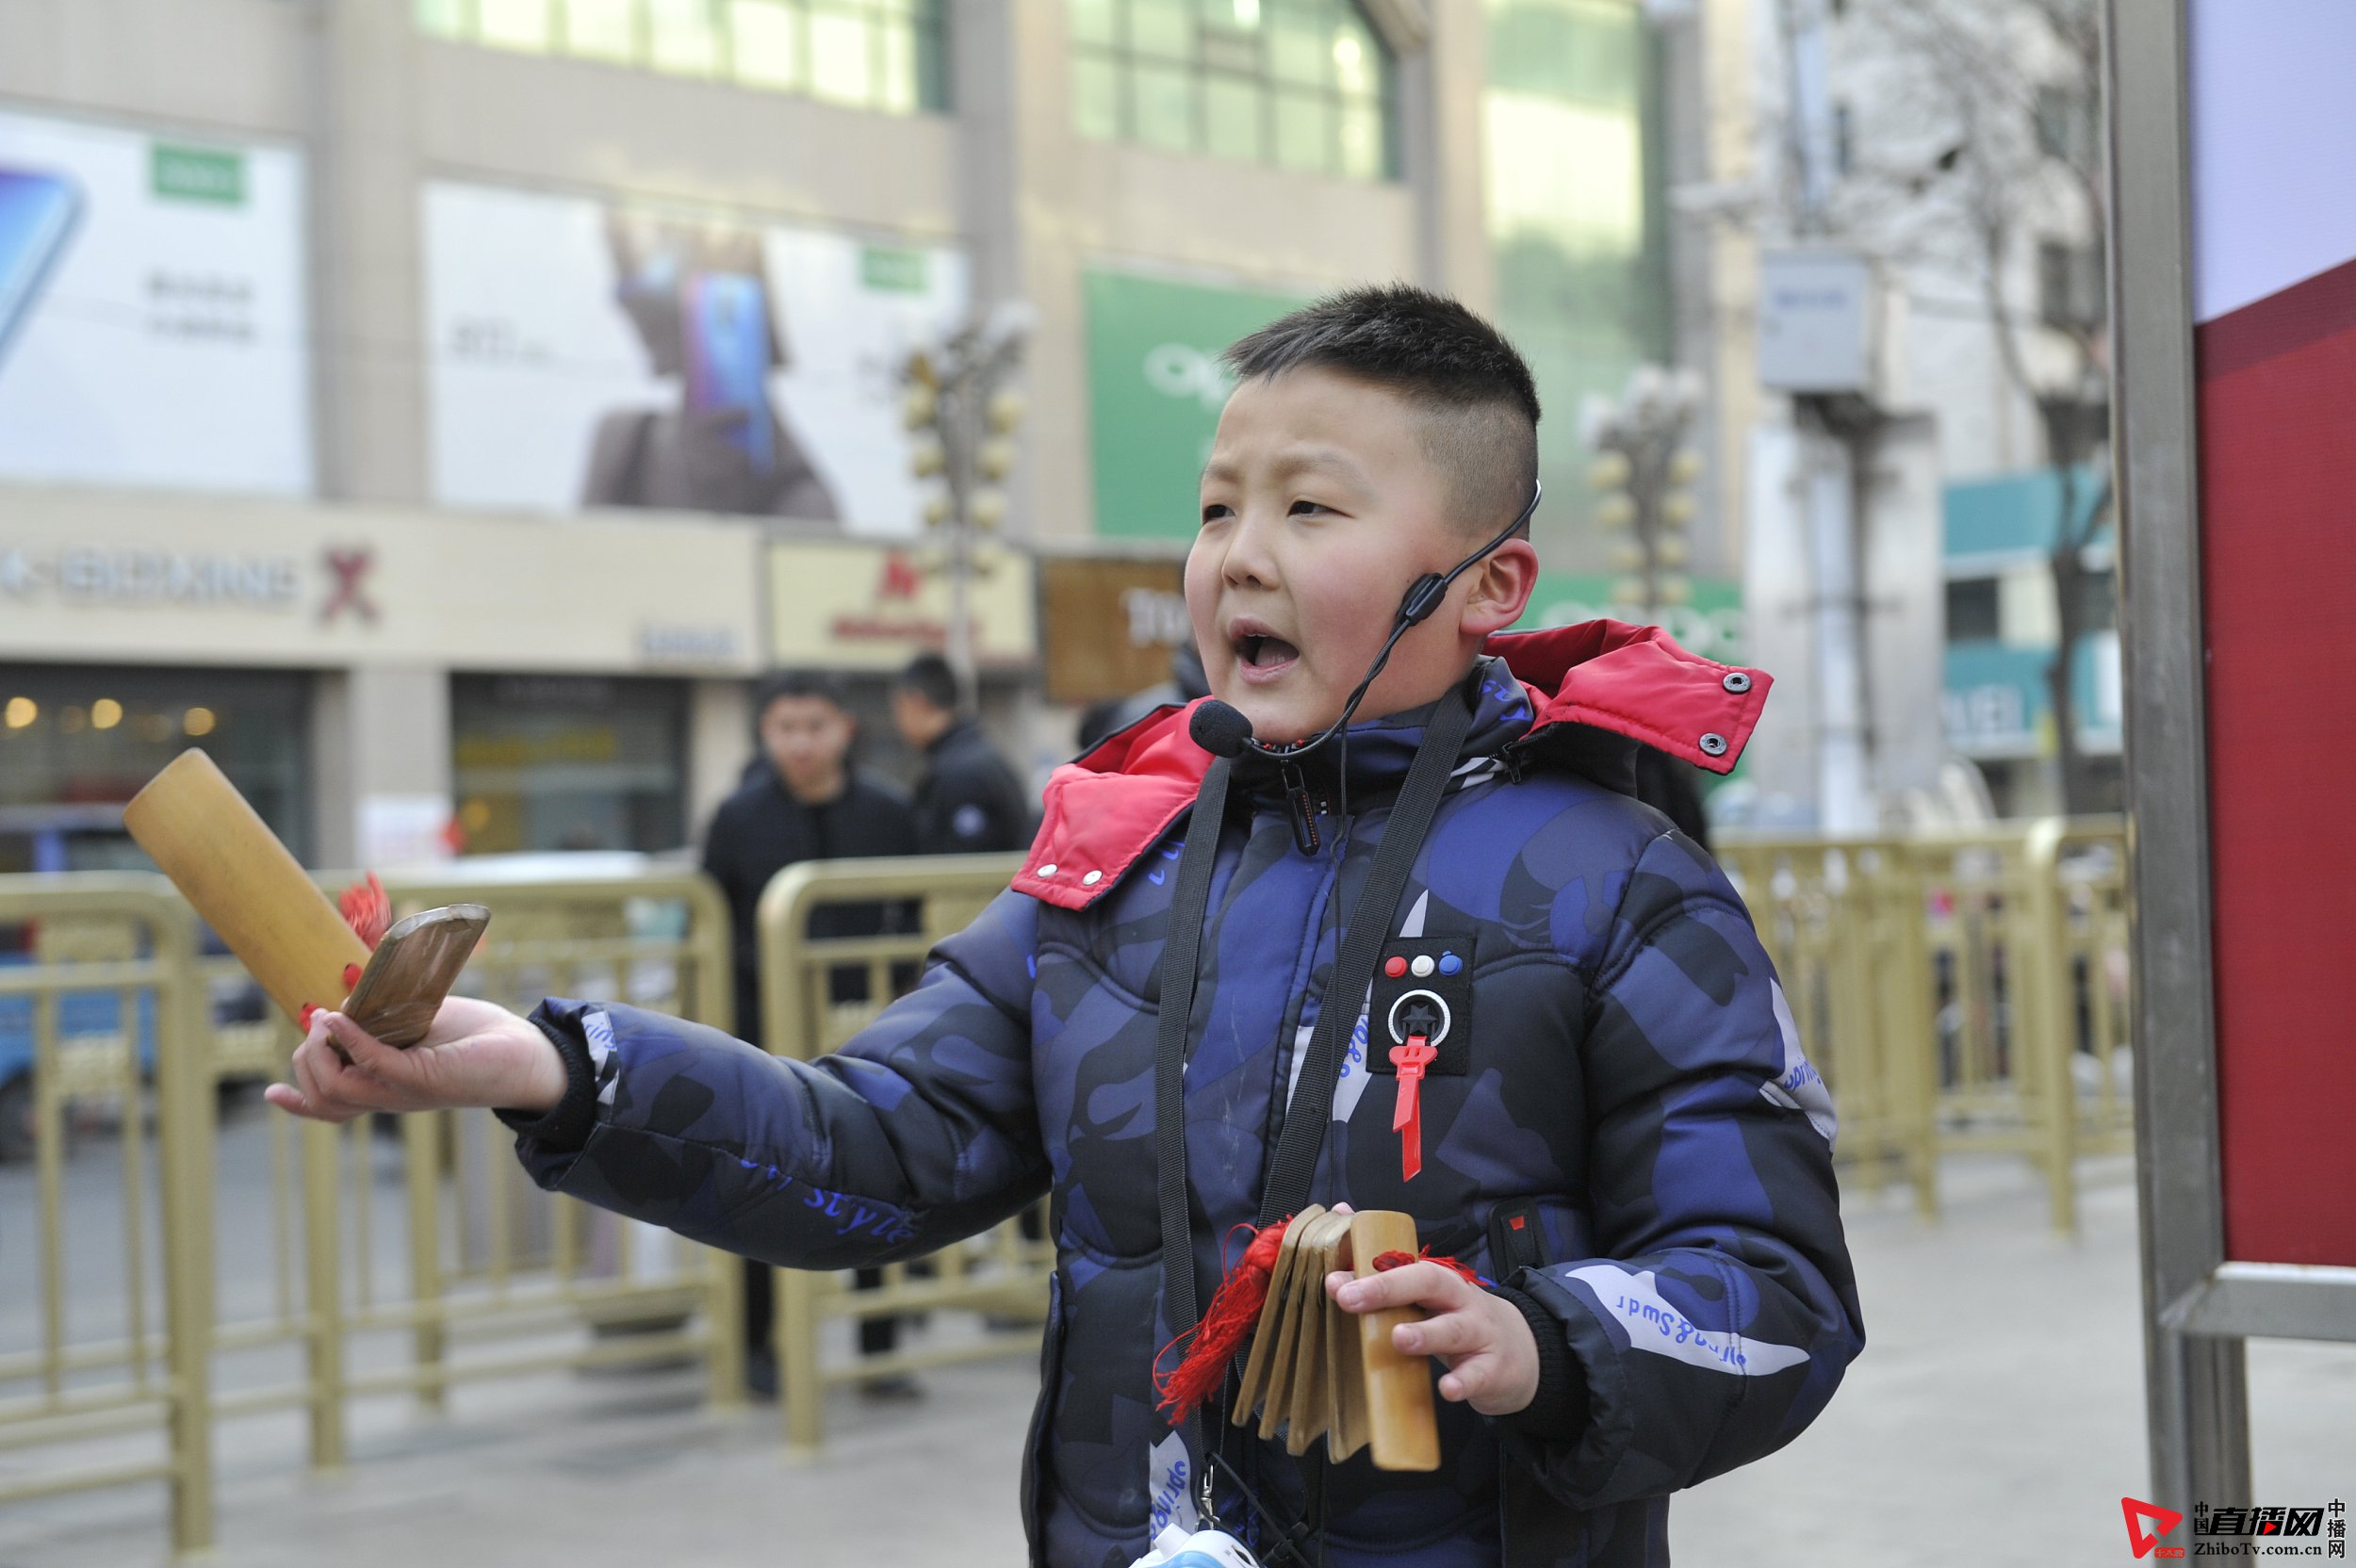 在银川市鼓楼步行街,9岁的刘宁波小朋友正在街头表演快板